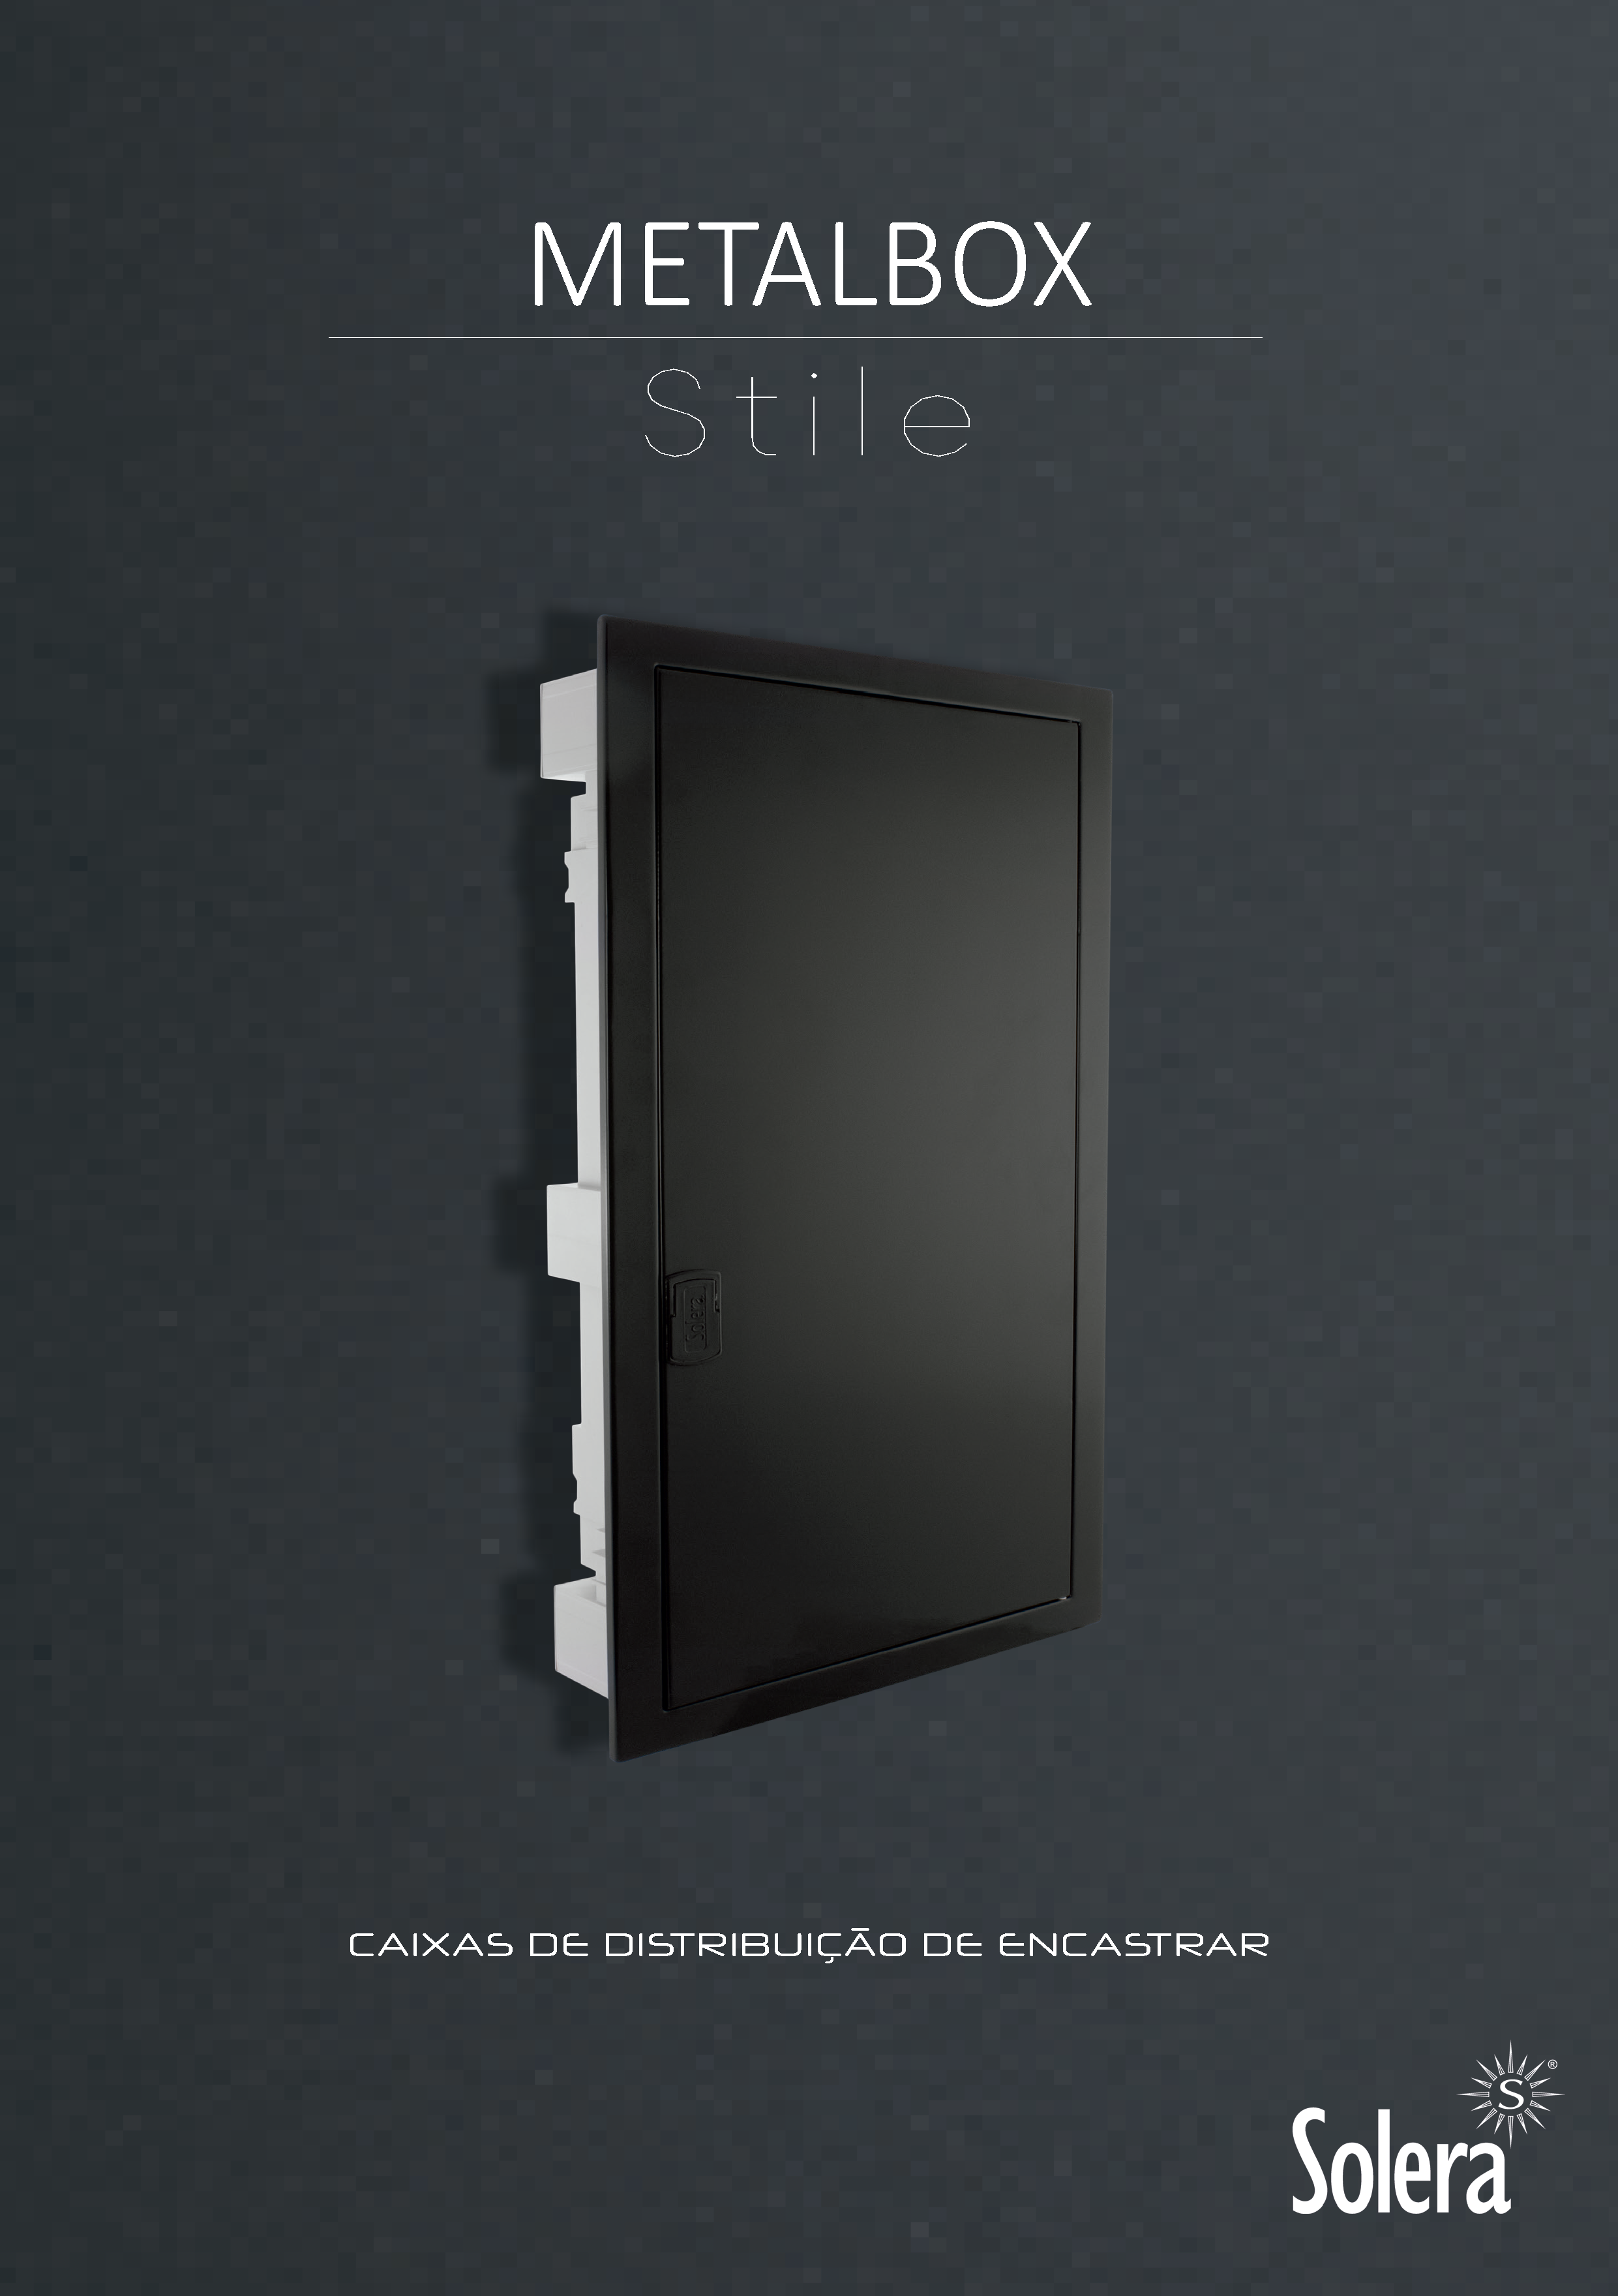 Metalbox Stile: Caixas de distribuição